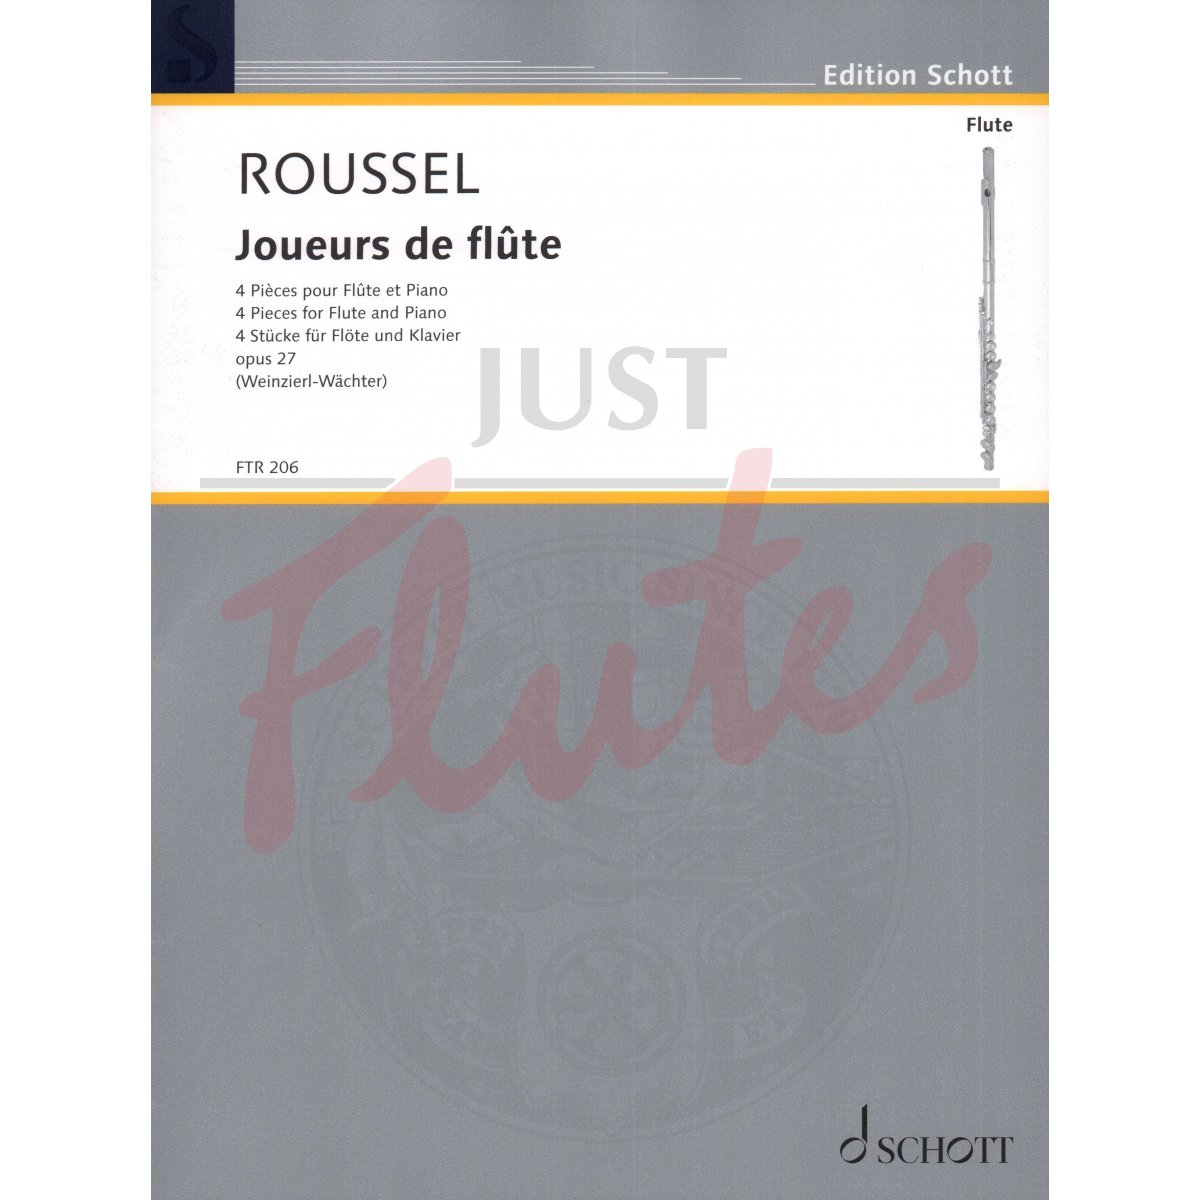 Joueurs de Flûte for Flute and Piano